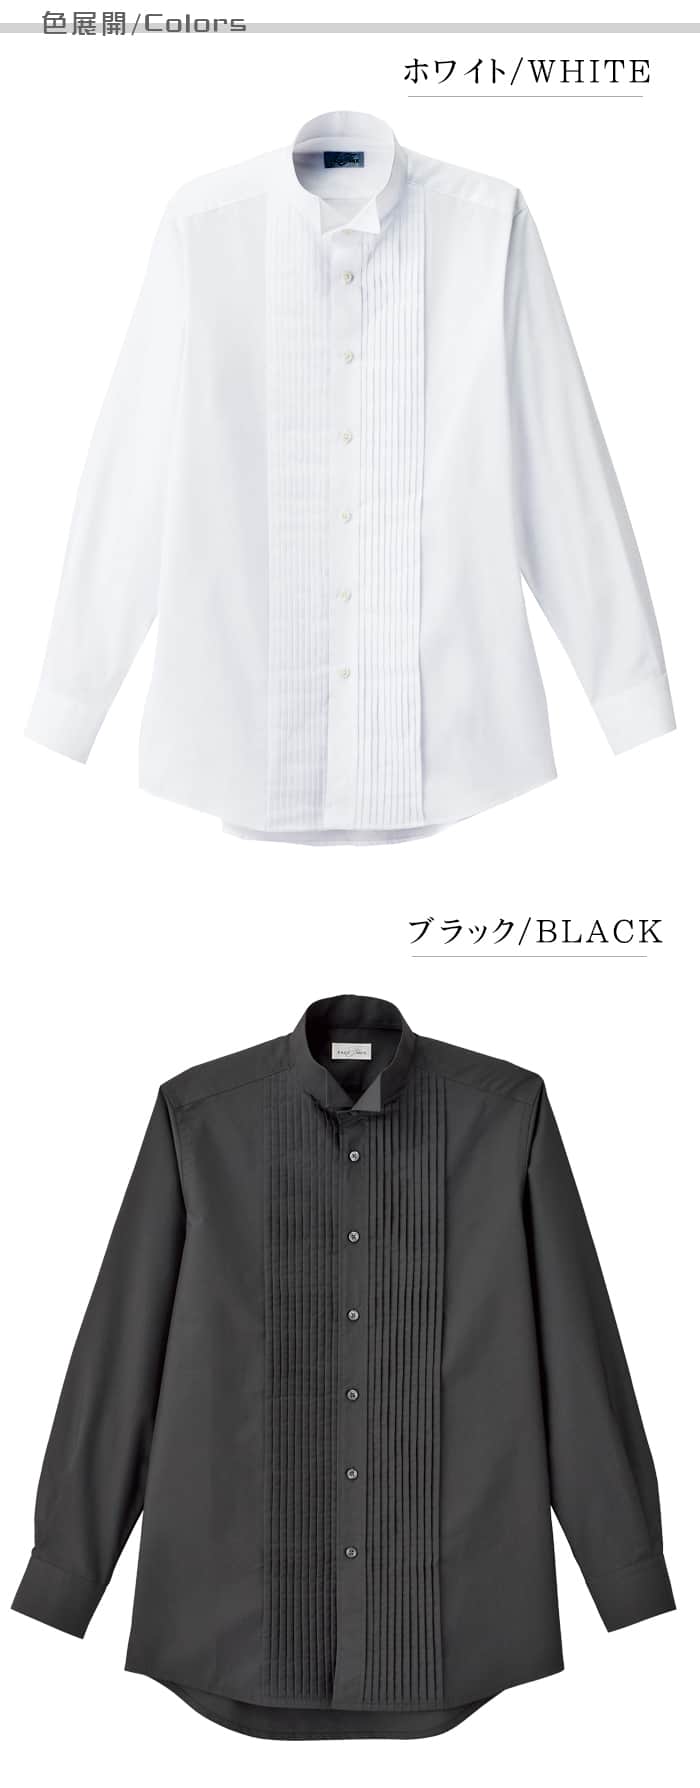 業務用制服フォーマルピンタック・ウイングカラーシャツ(長袖)メンズ(男)2色  カラー展開説明